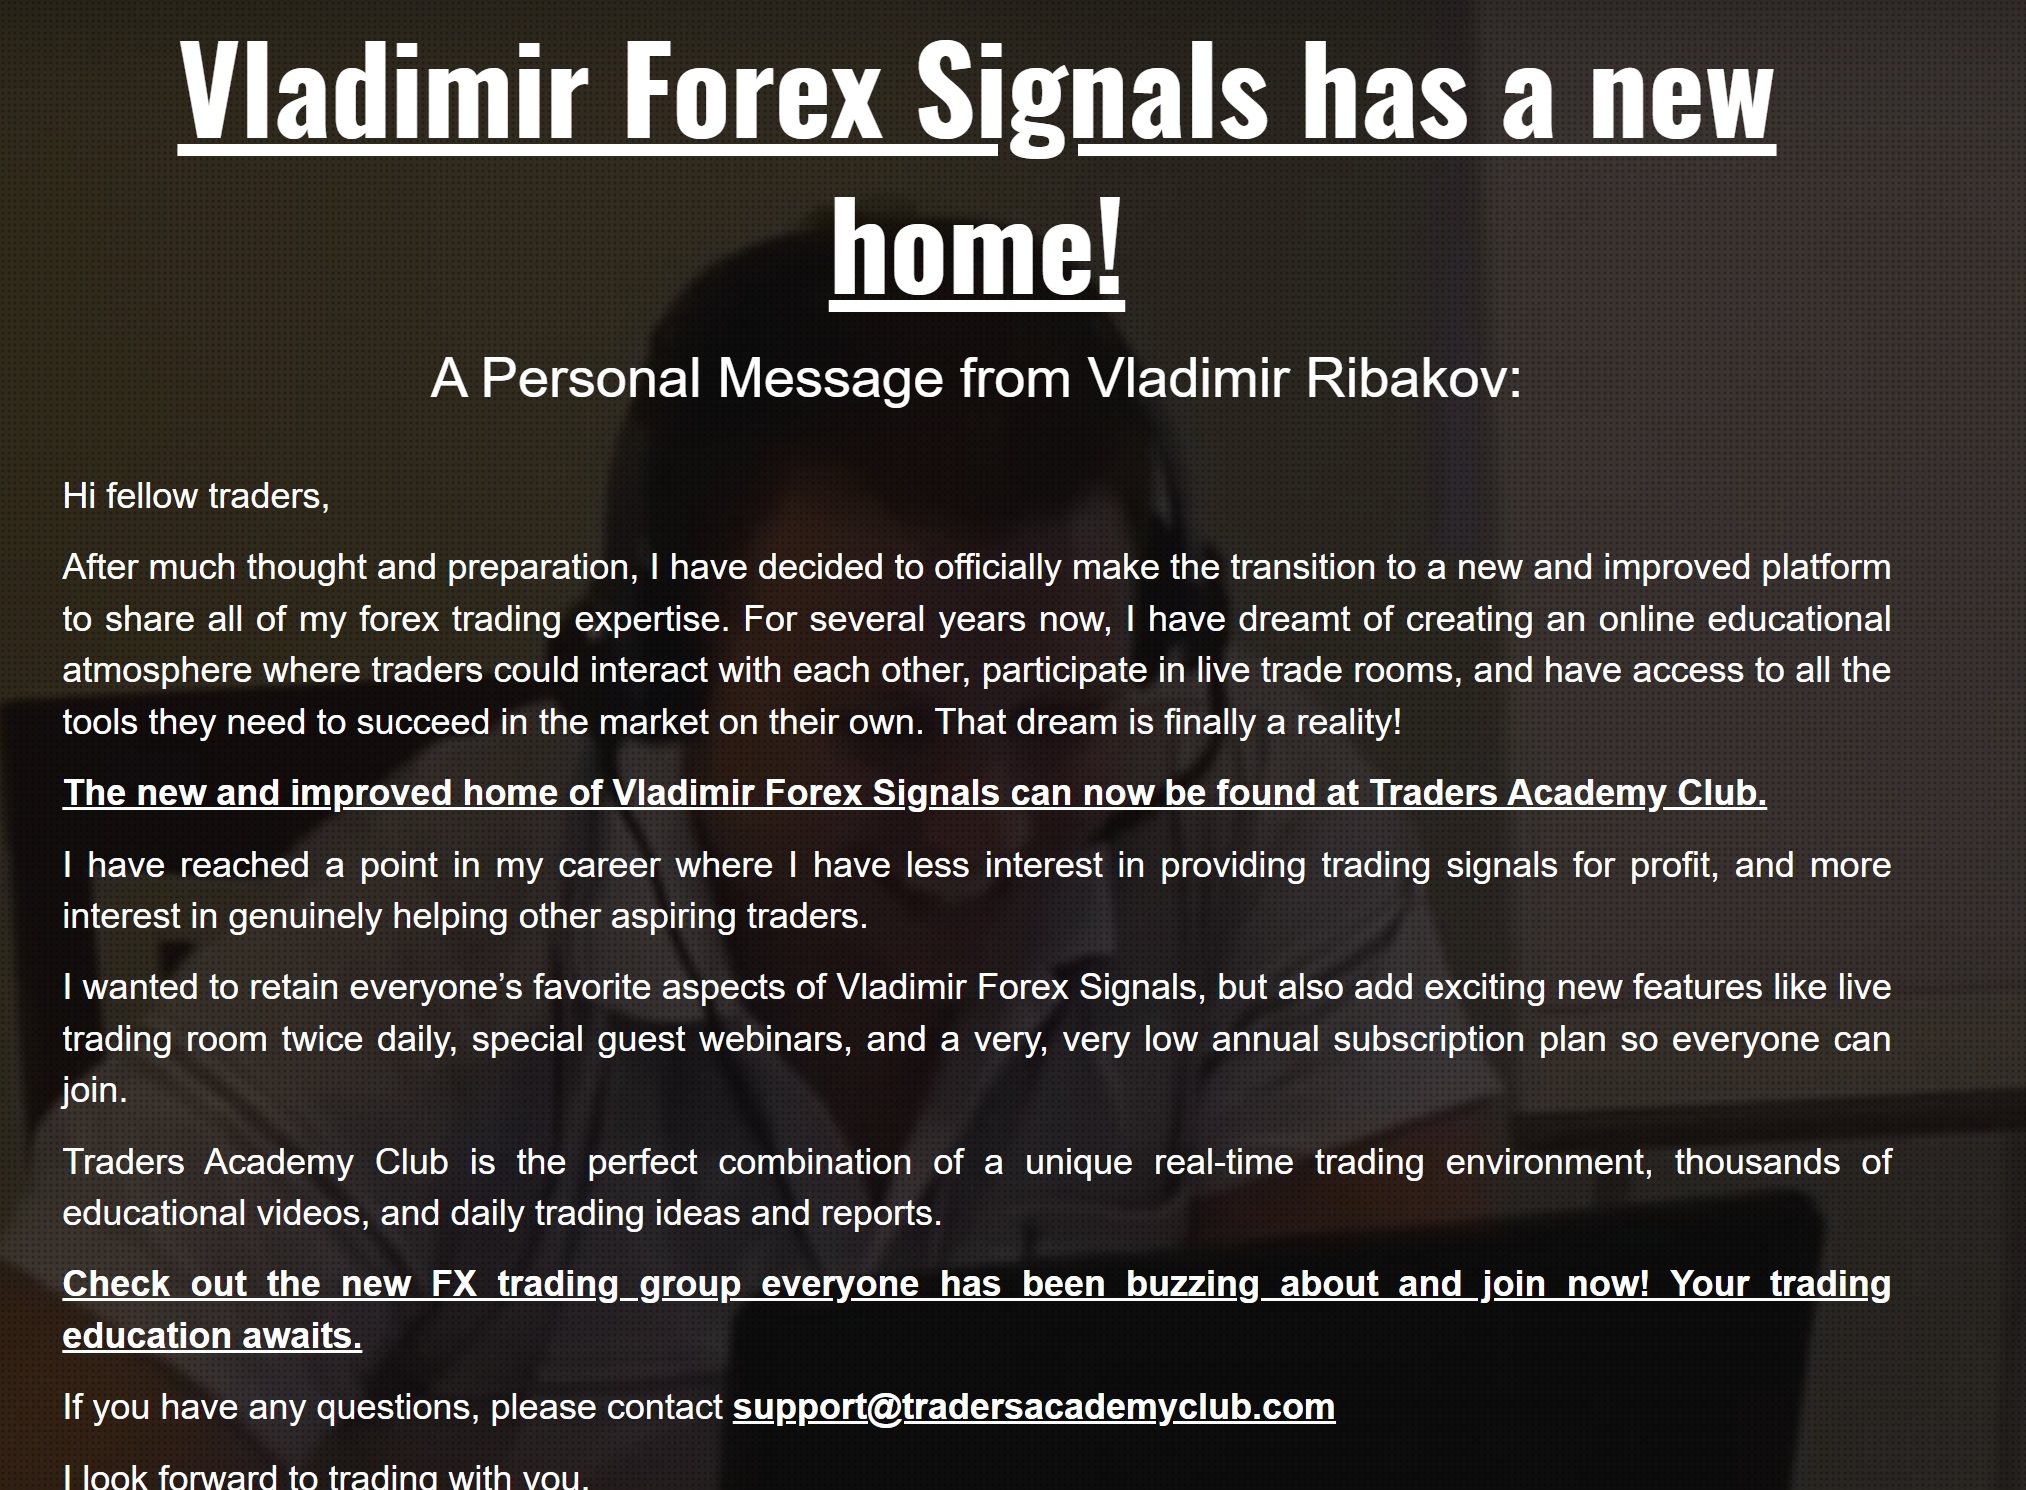 Vladmir's Forex Signals